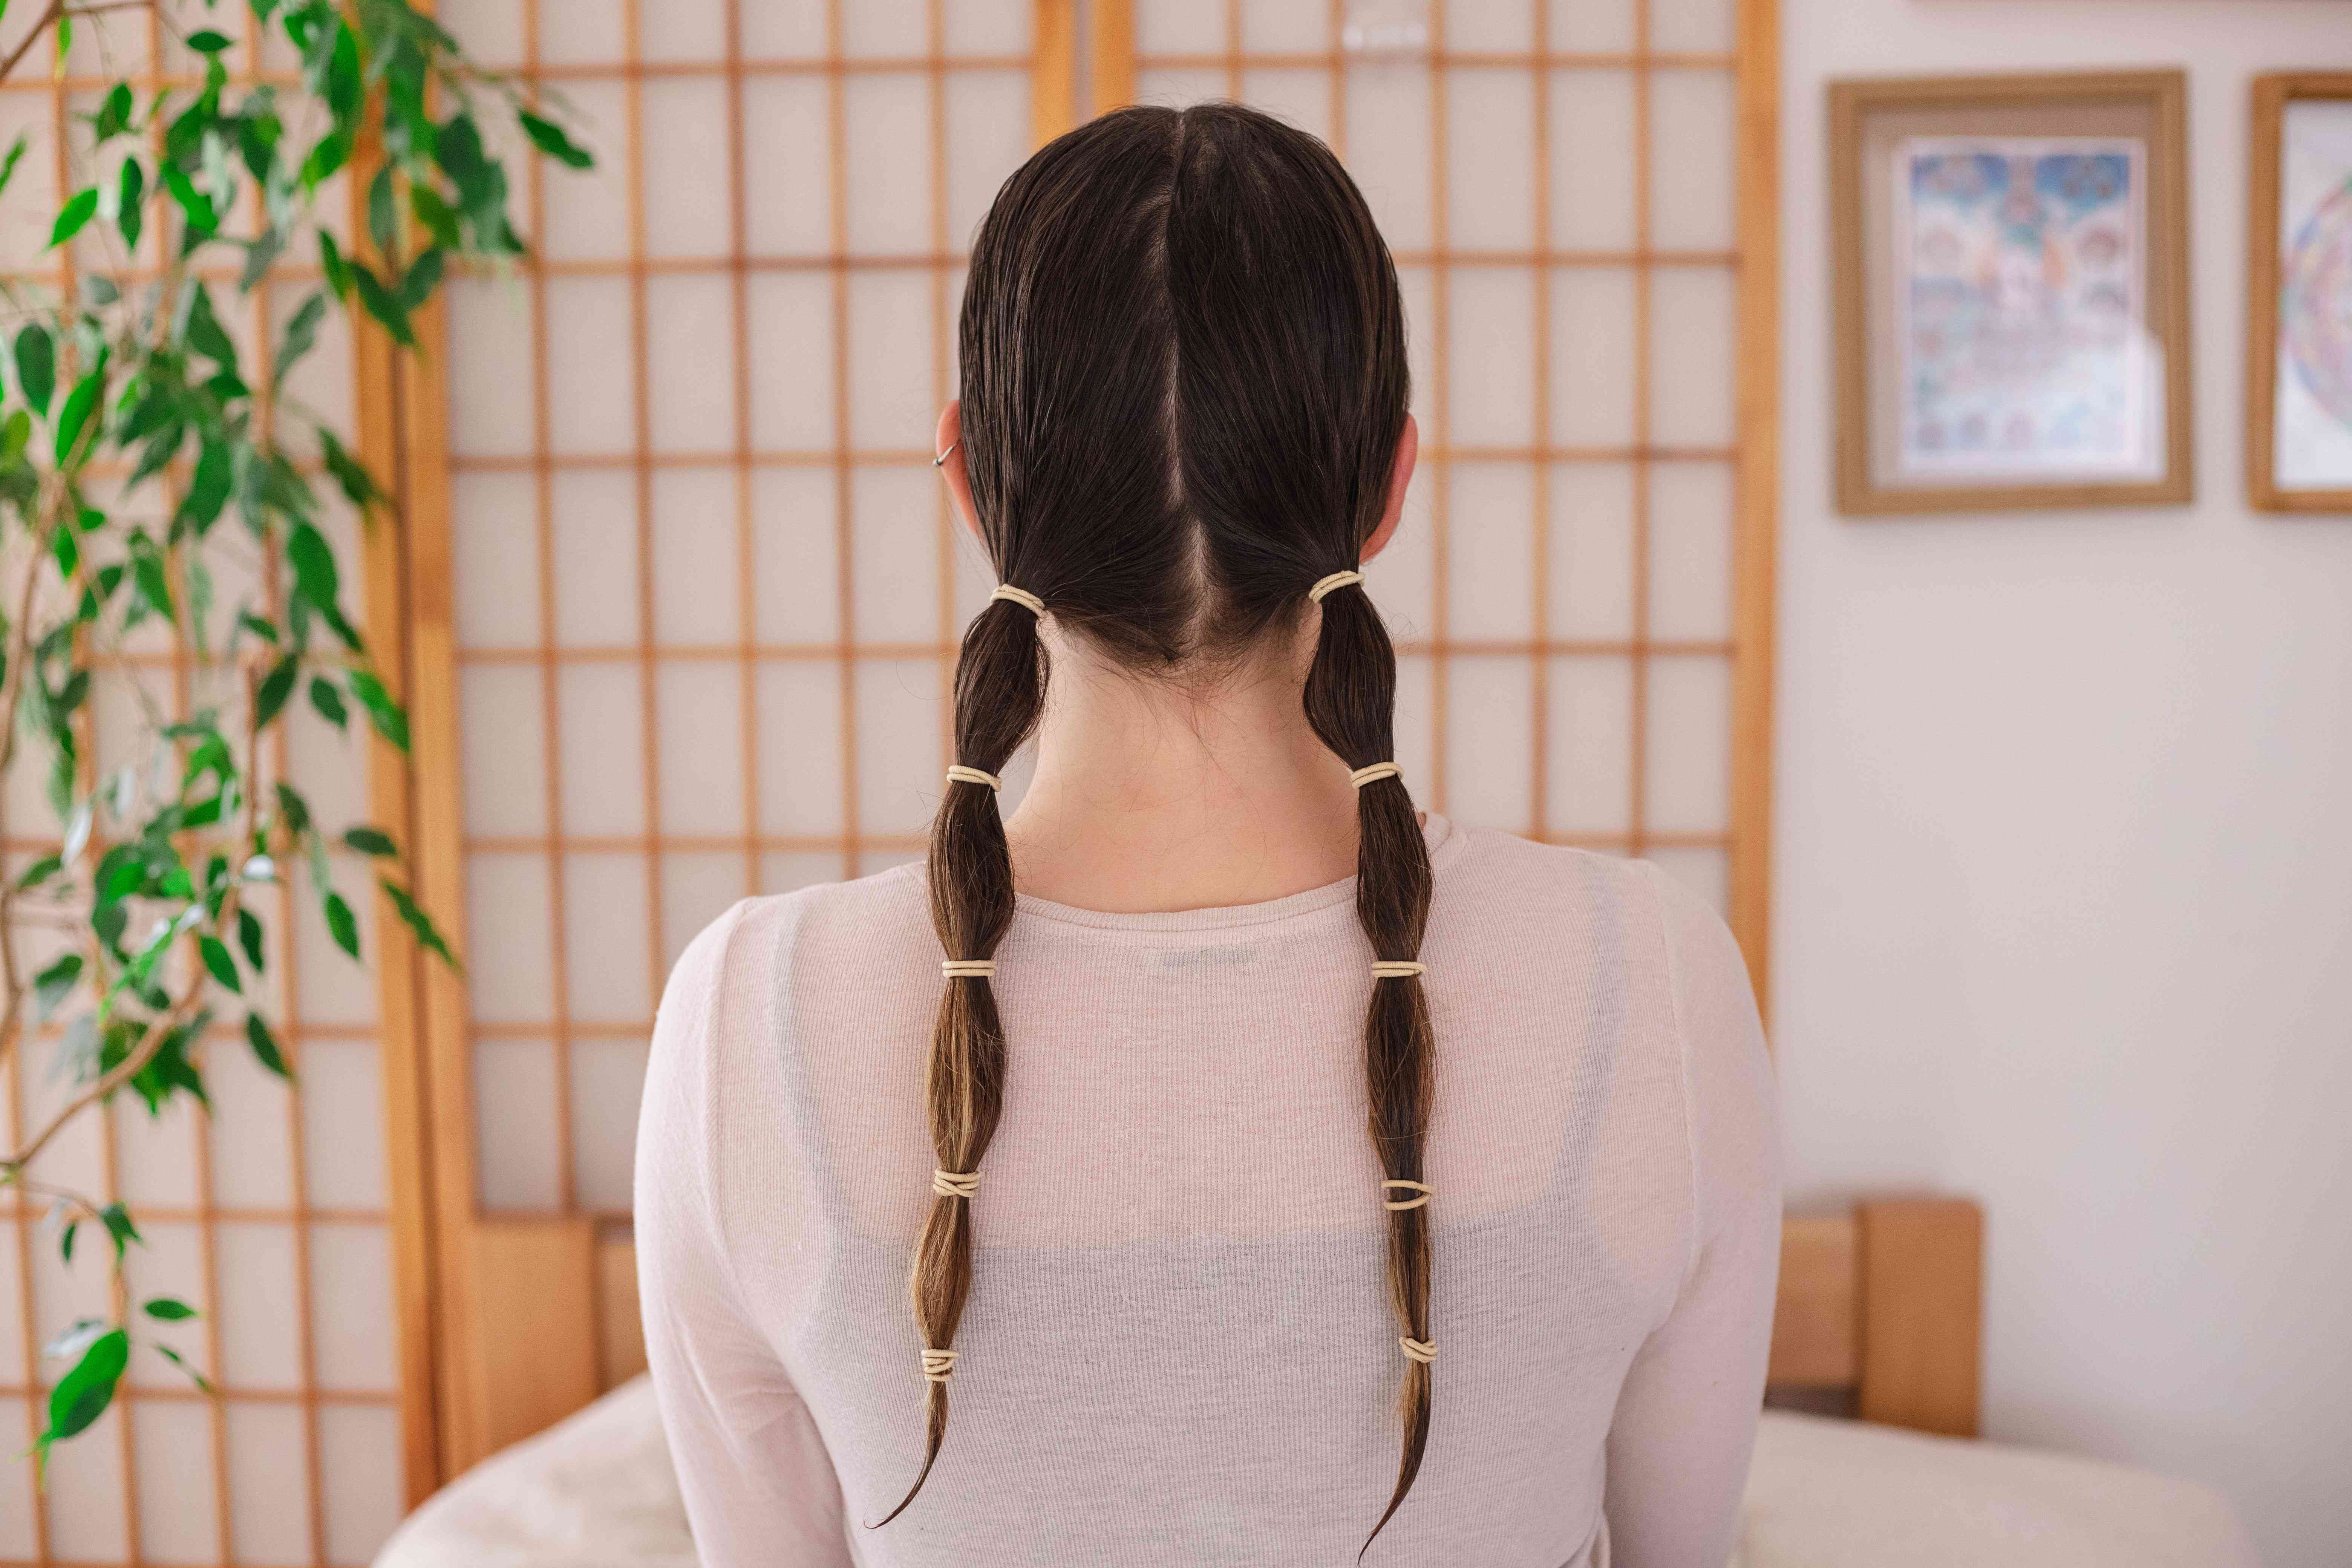 背部拍摄的女性潮湿的头发和两个低马尾辫在多个地方用发带固定